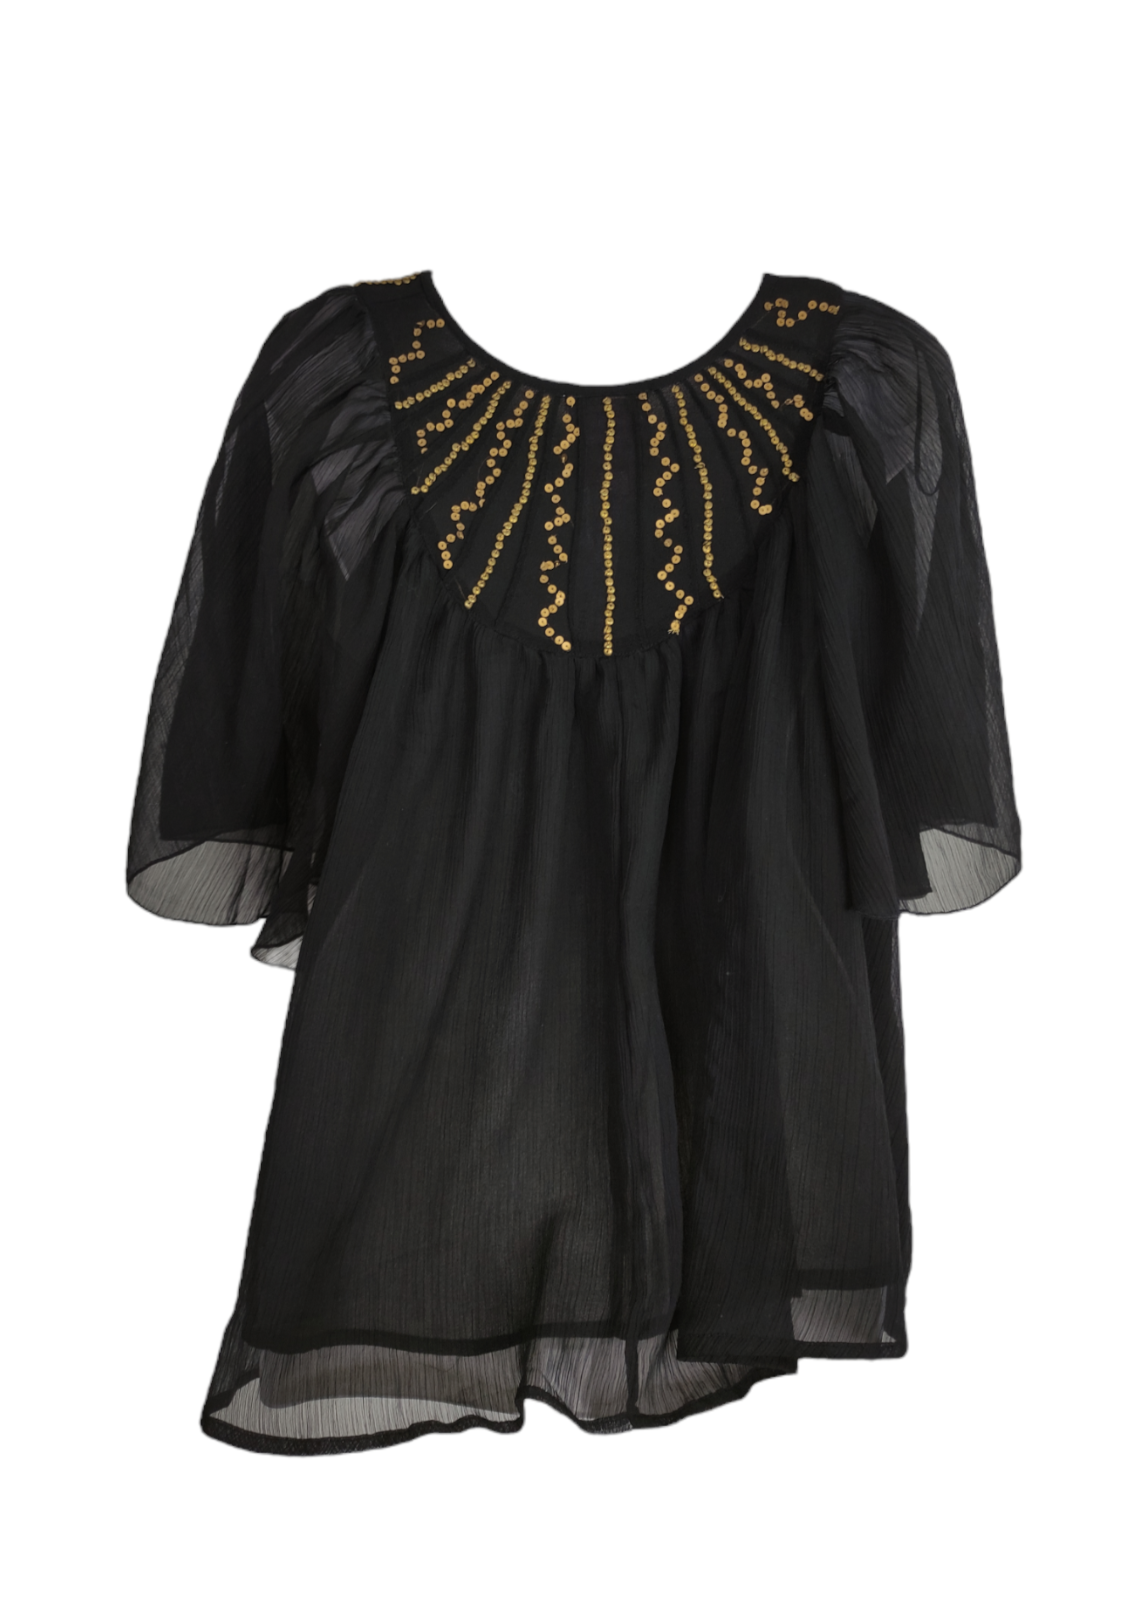 Γυναικεία Μπλούζα ROMEO & JULIET με Διπλή διαφάνεια σε Μαύρο χρώμα (Medium)